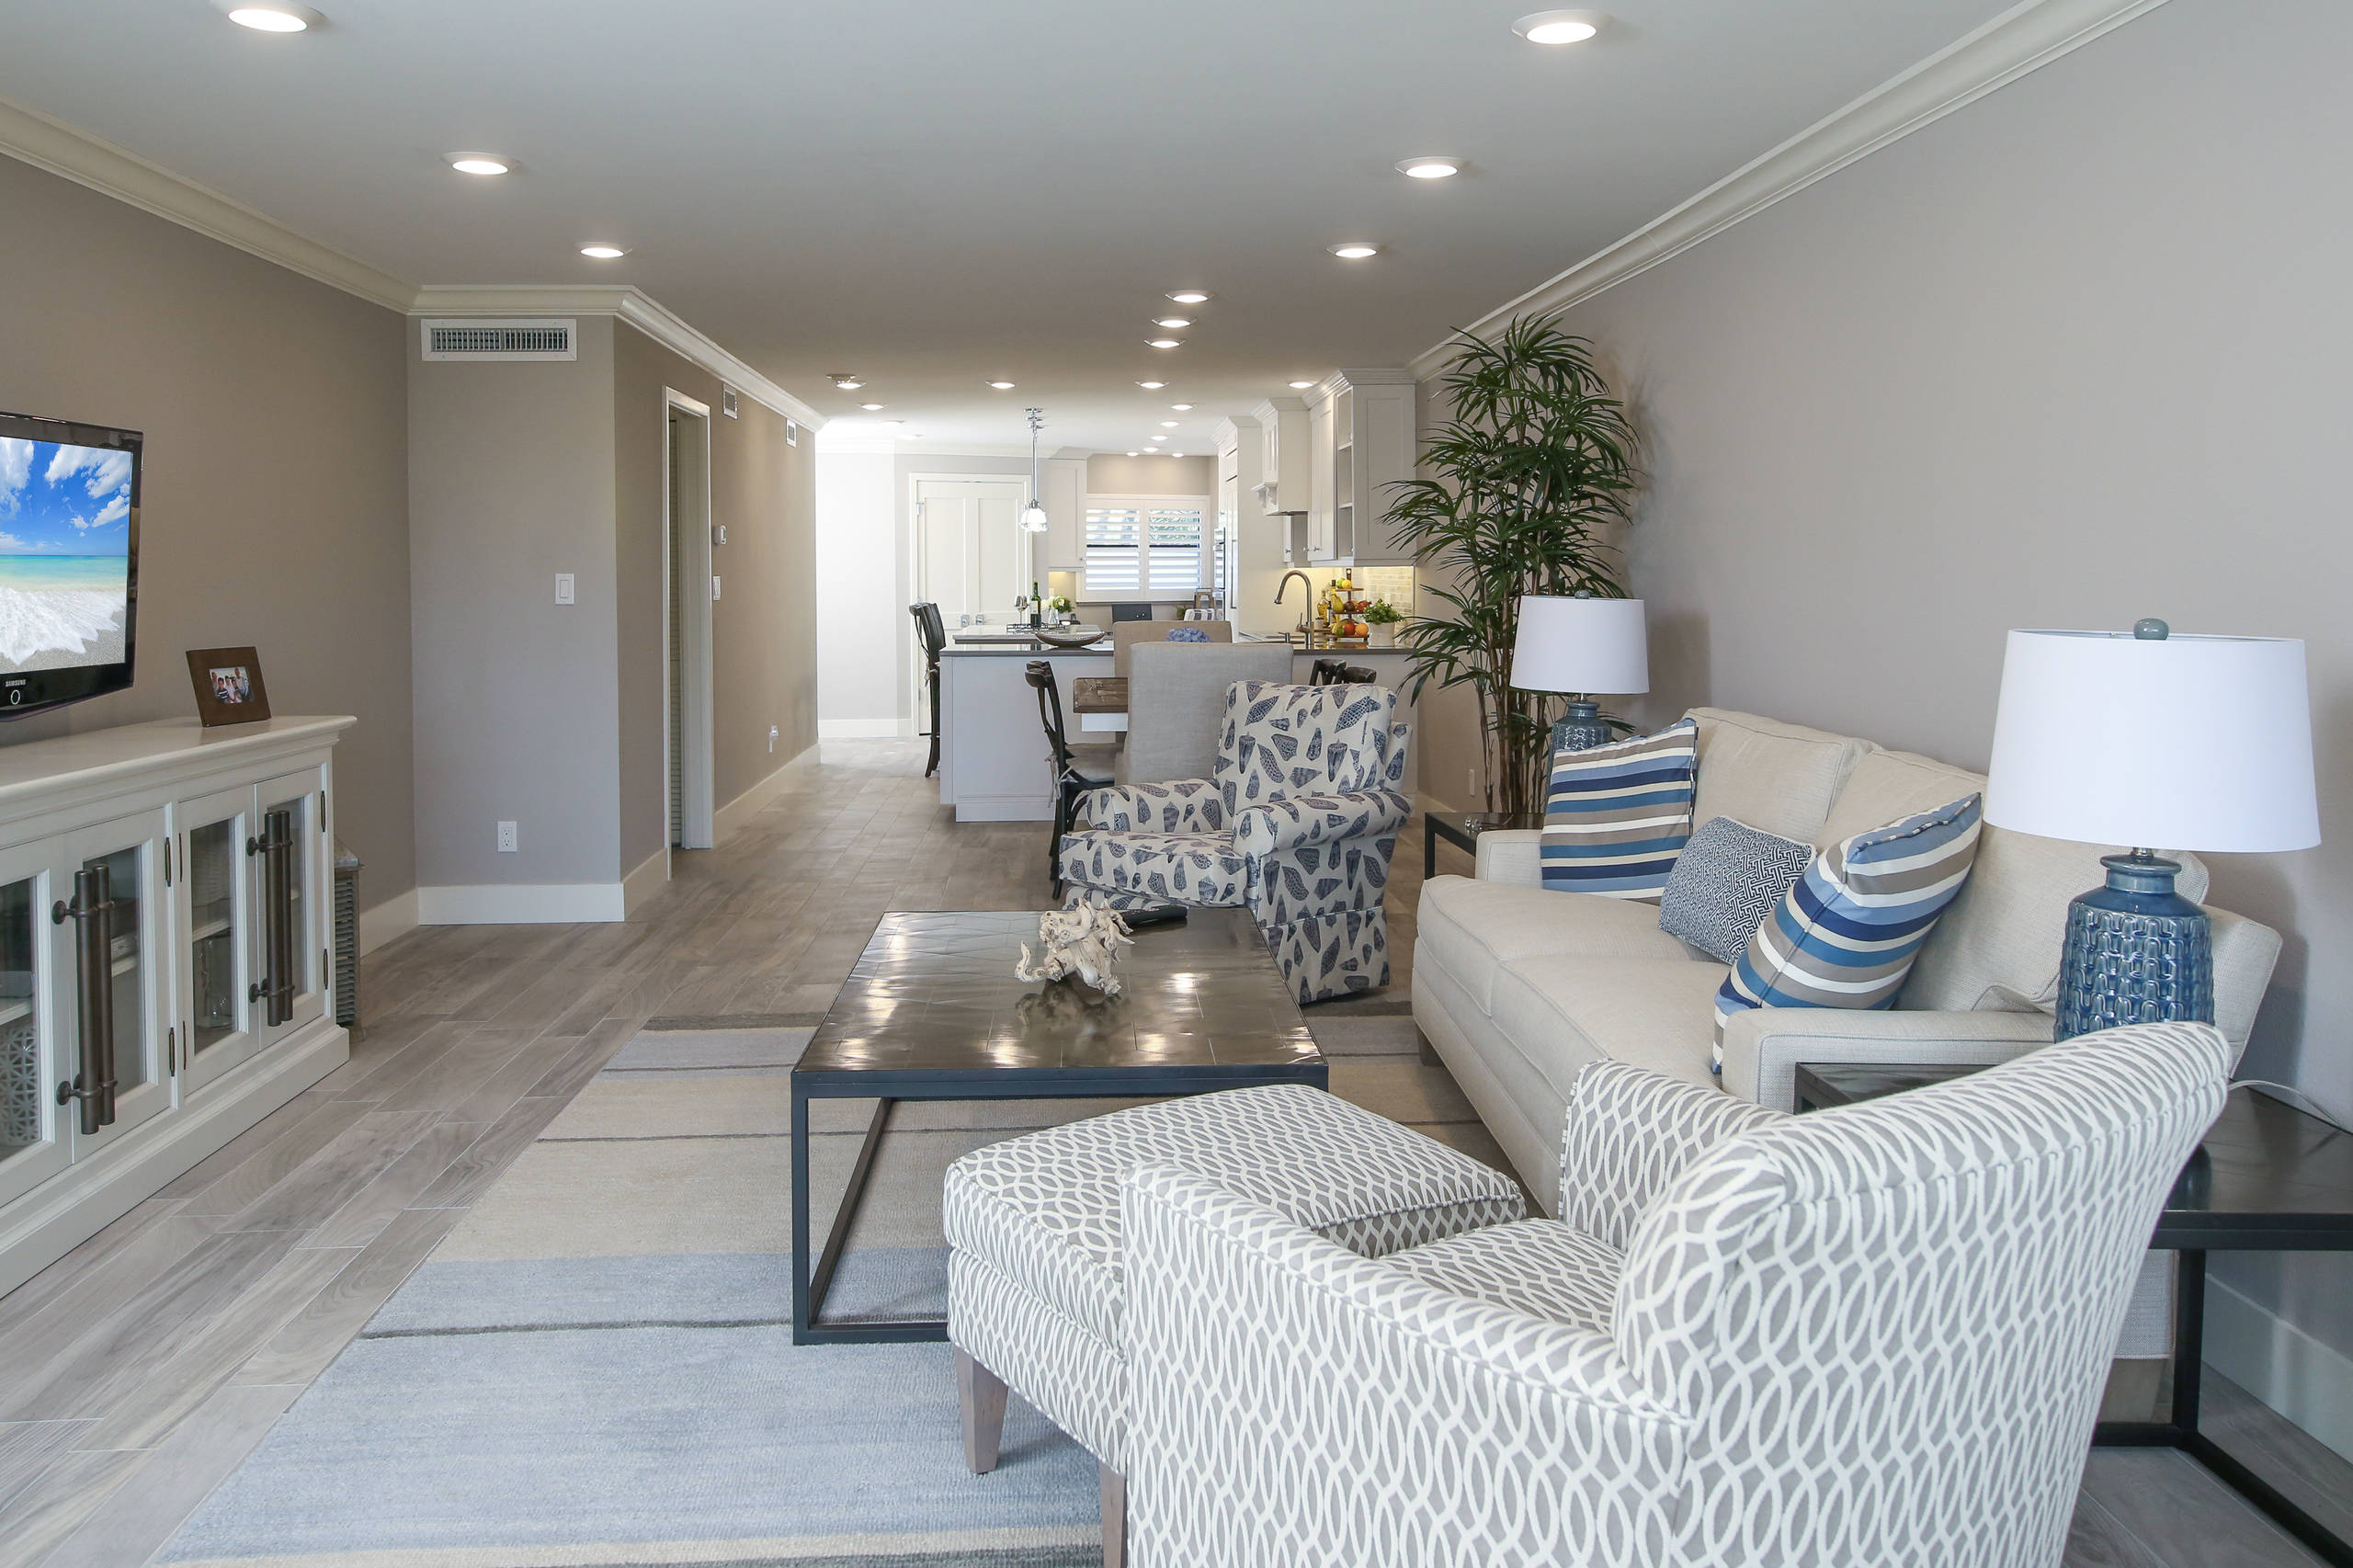 Certified Luxury Builders - Westin Hills - Siesta Key, FL - Condo Remodel 2